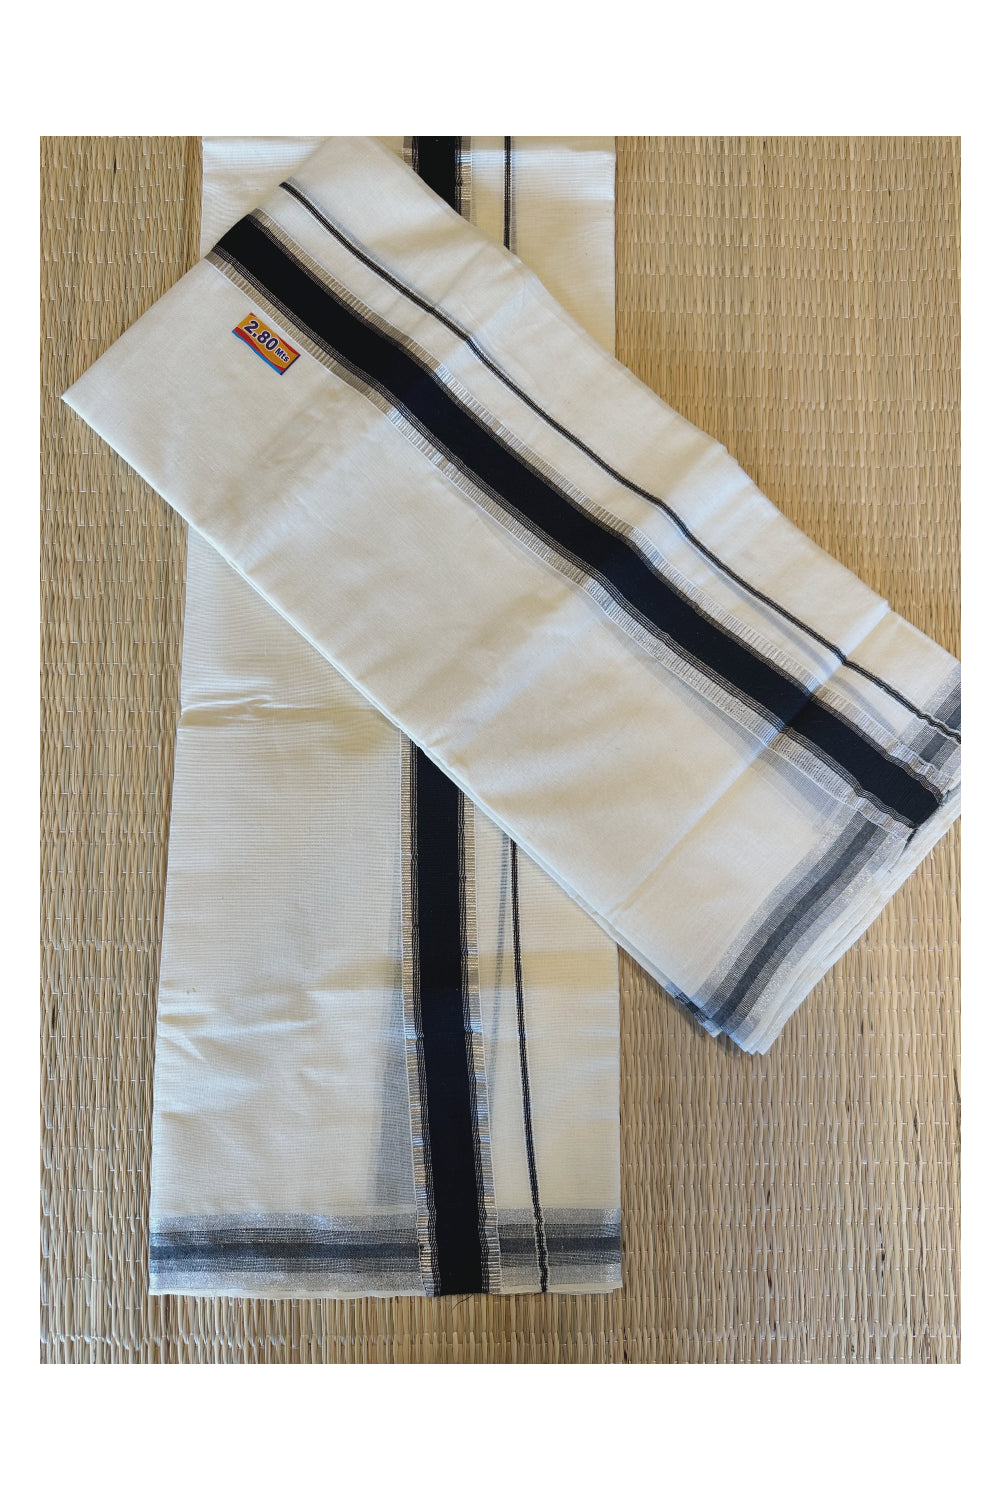 Kerala Cotton Mundum Neriyathum Single (Set Mundu) with Black and Silver Kasavu Border 2.80 Mtrs